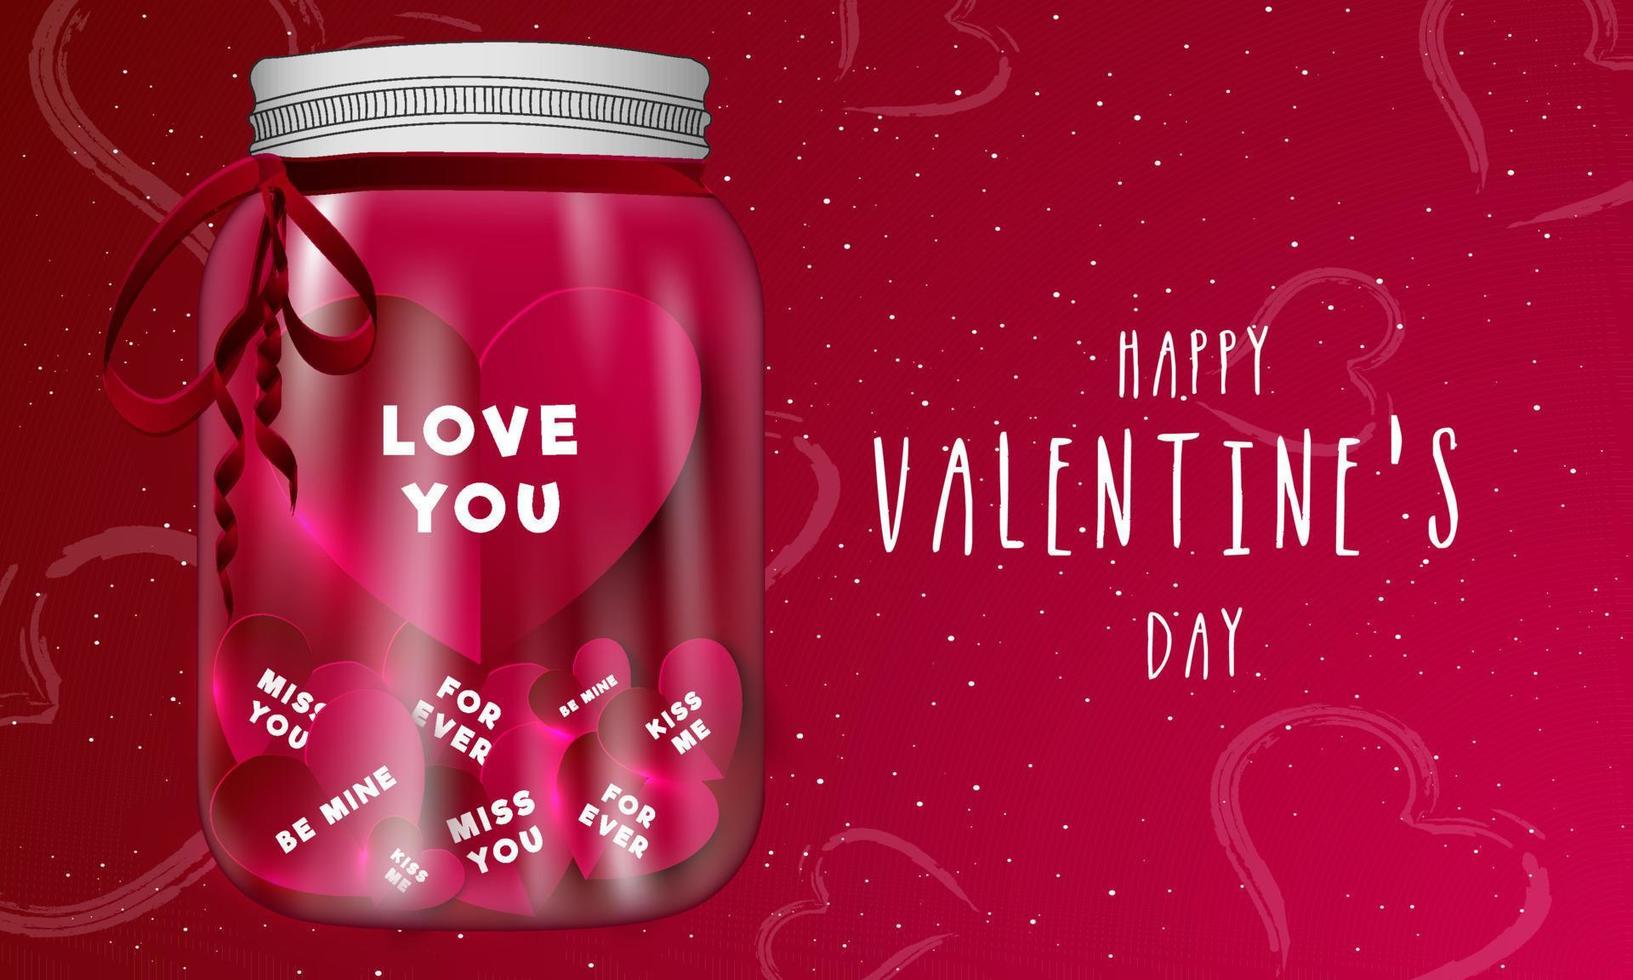 anders Liebe Botschaft im bilden von Papier Herz Innerhalb ein 3d Krug auf rot Hintergrund zum glücklich Valentinstag Tag Geschenk. vektor